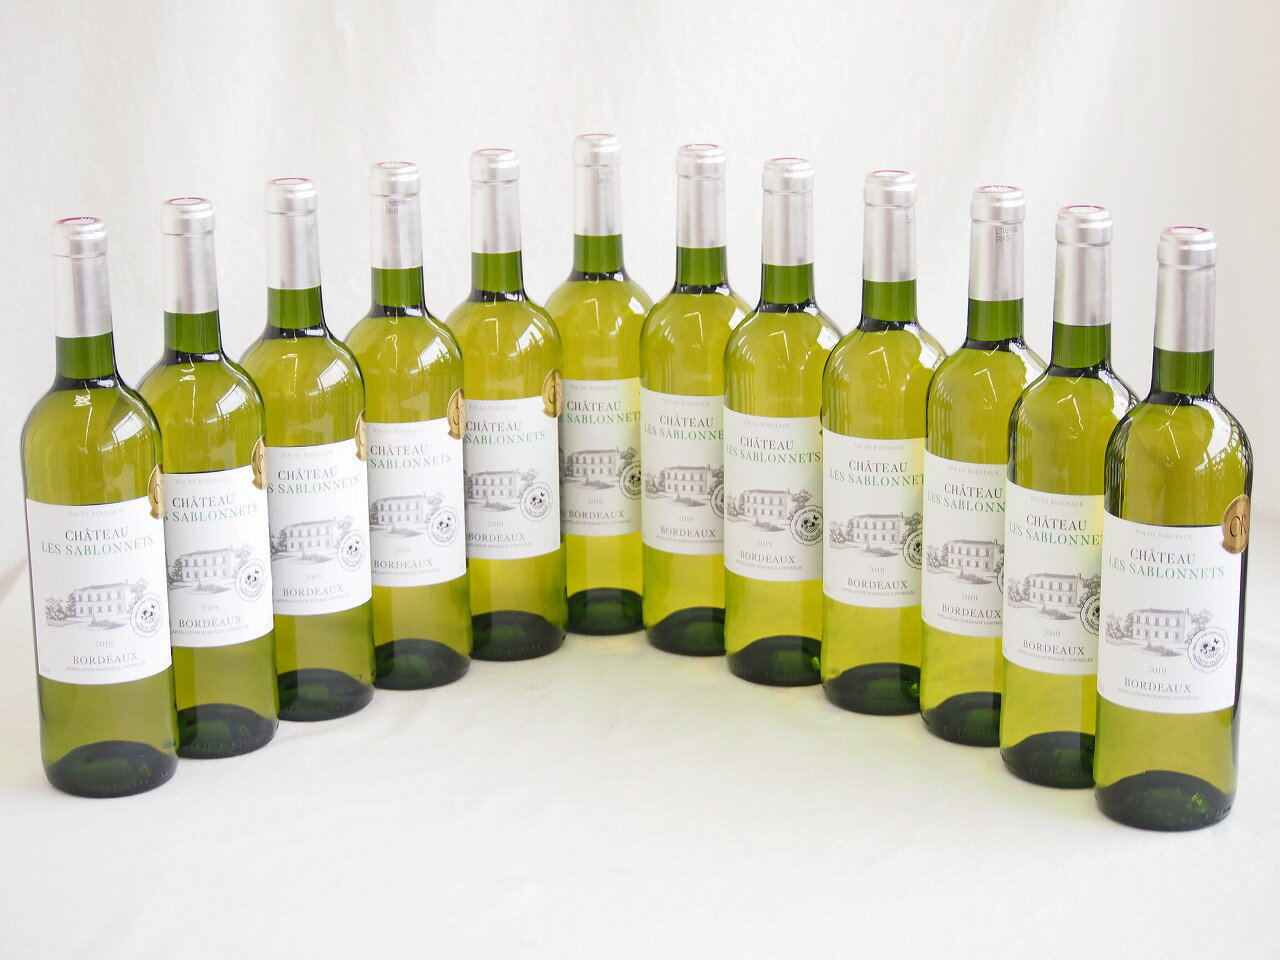 12本セット(金賞ボルドーフランス白ワイン シャトー レ サブロネ) 750ml×12本